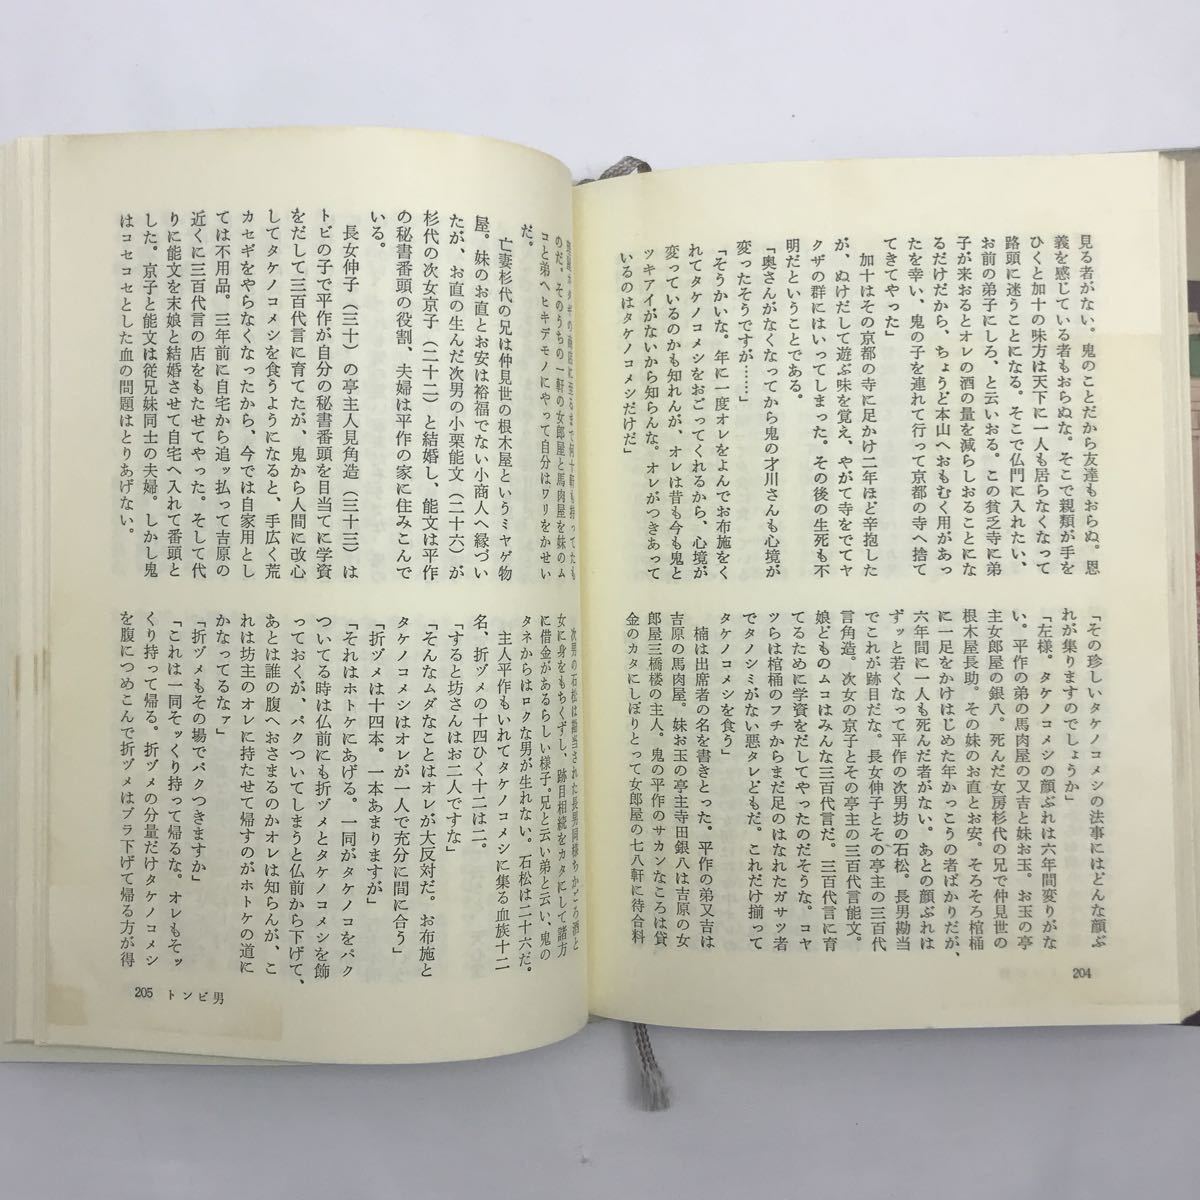  Meiji .. дешево .. предмет .( сверху )( средний )( внизу )3 шт. комплект автор ( Sakaguchi Ango ) Showa 58 год ( бесплатная доставка )